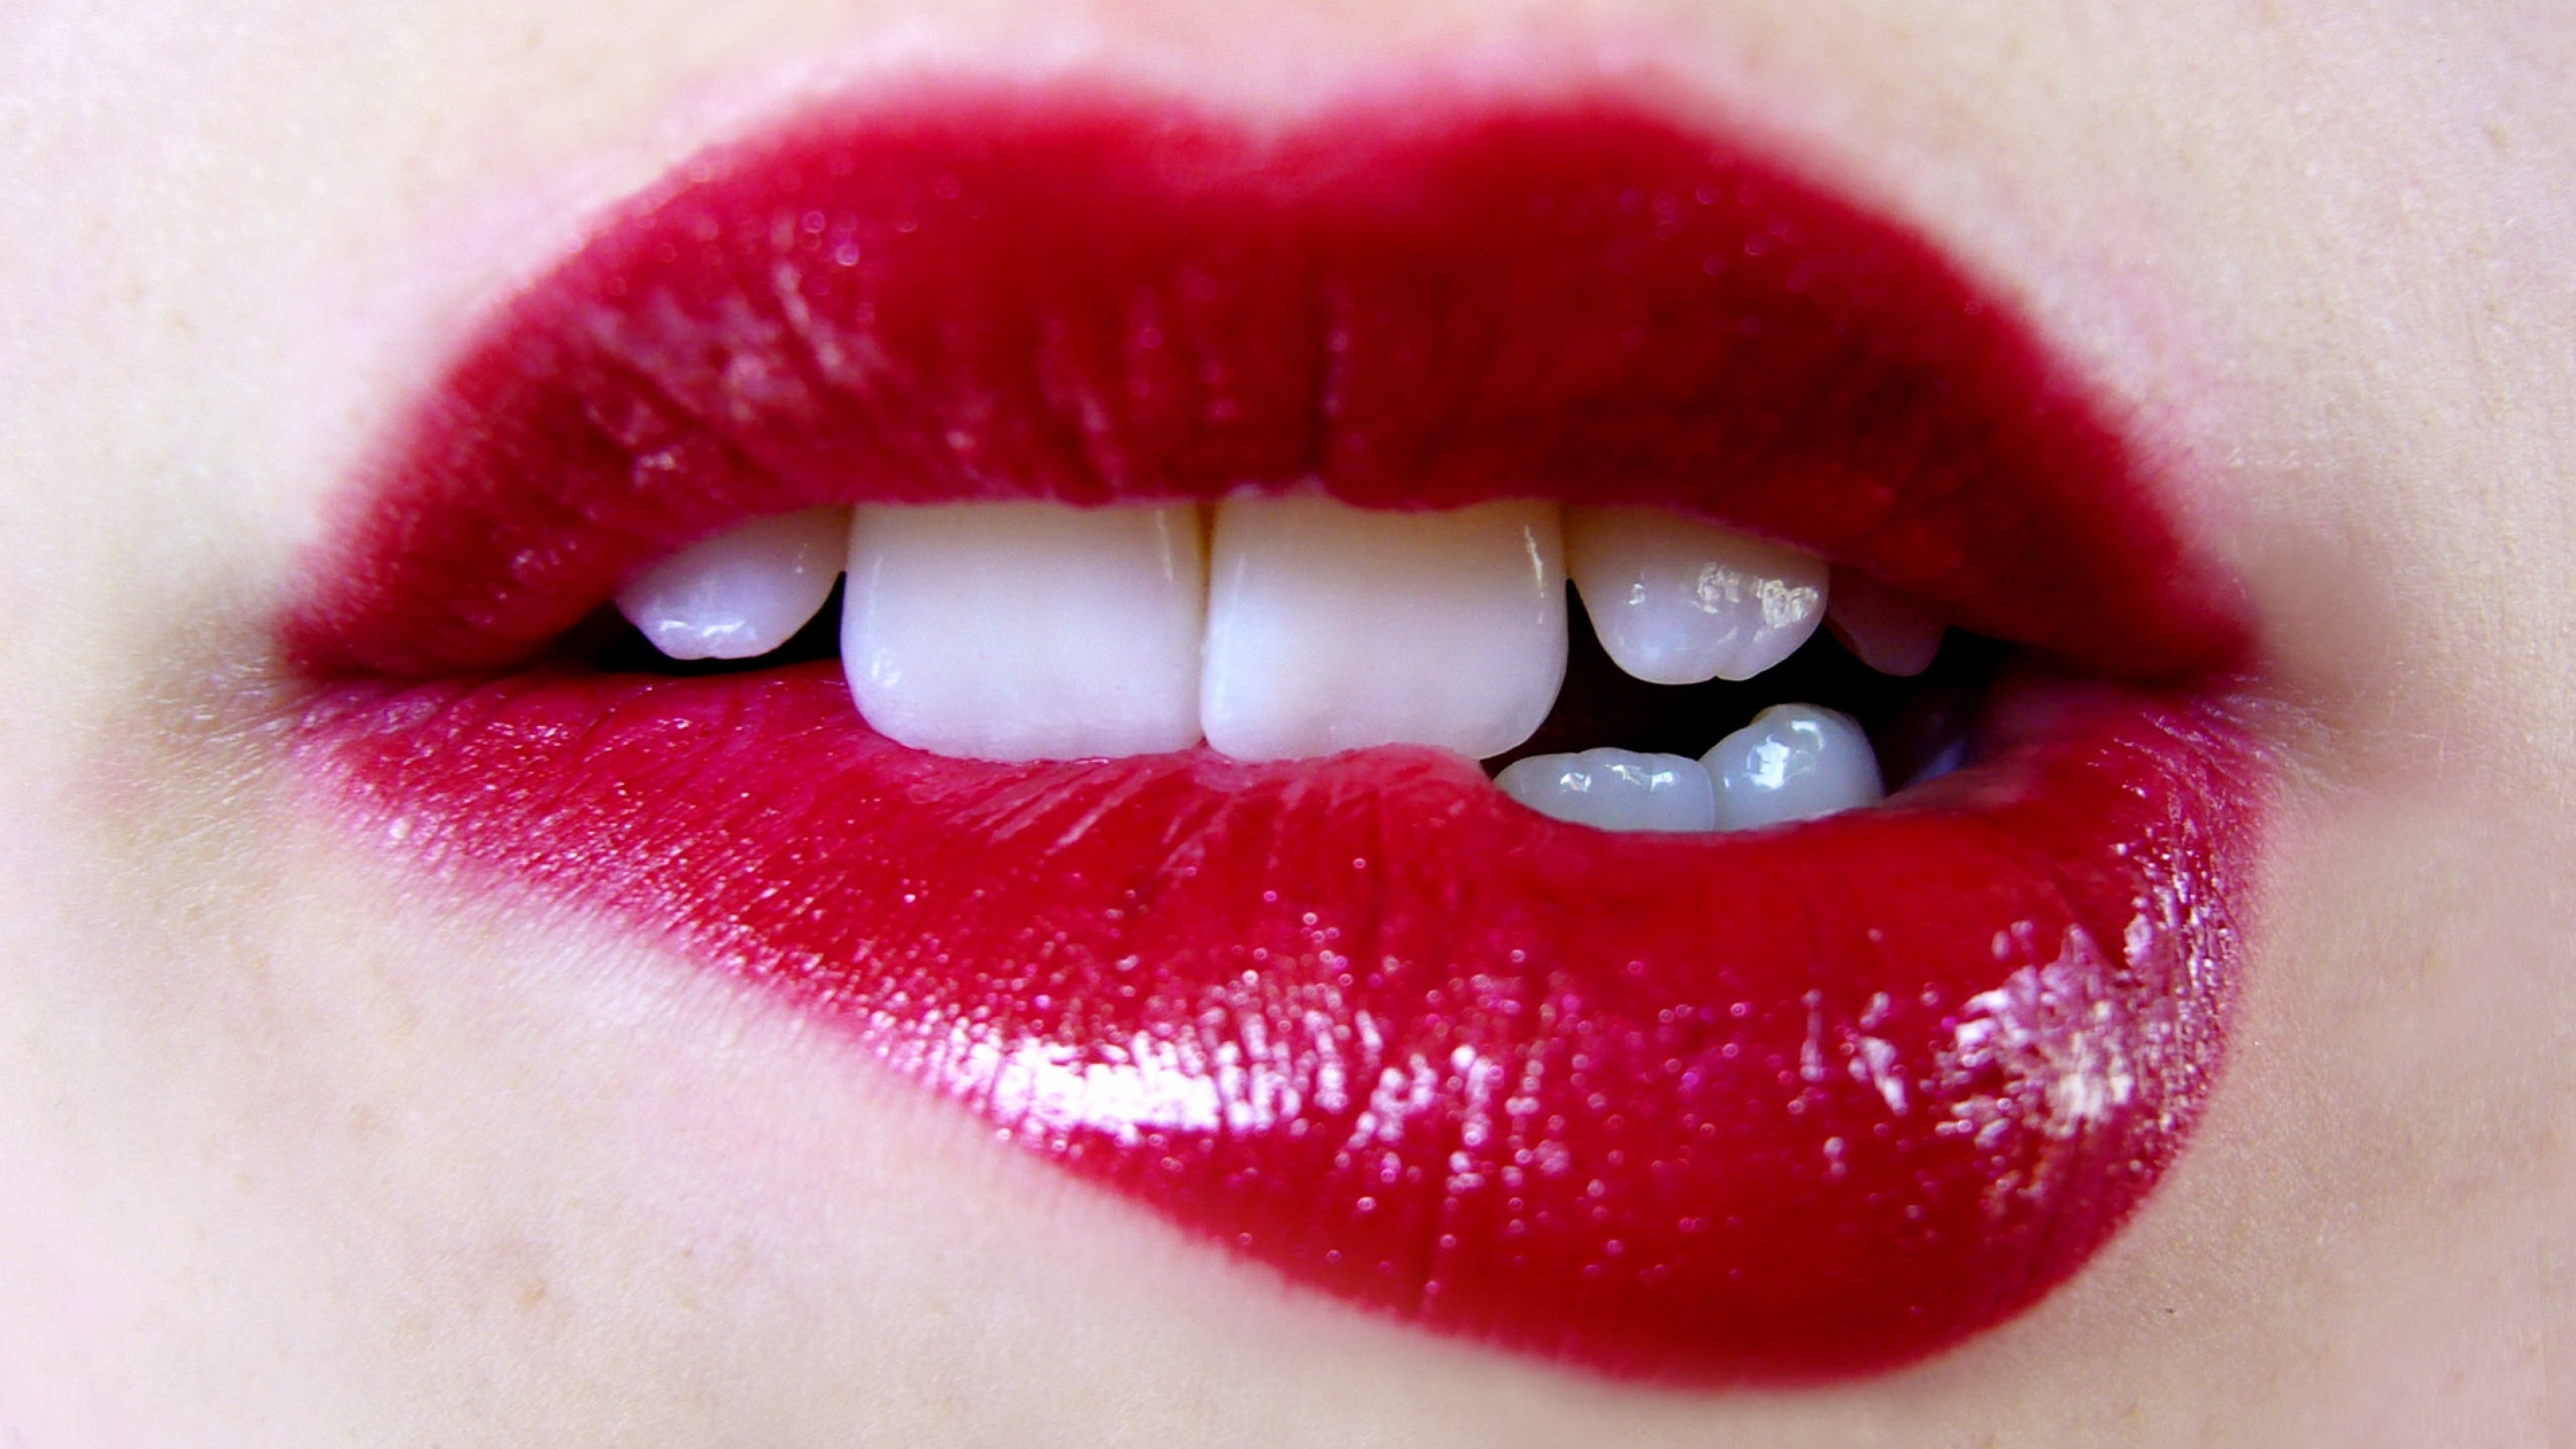 С чуть черневшимися усиками верхняя губка. Женские губы. Красивые губки. Красивые женские губы. Картинки губ.